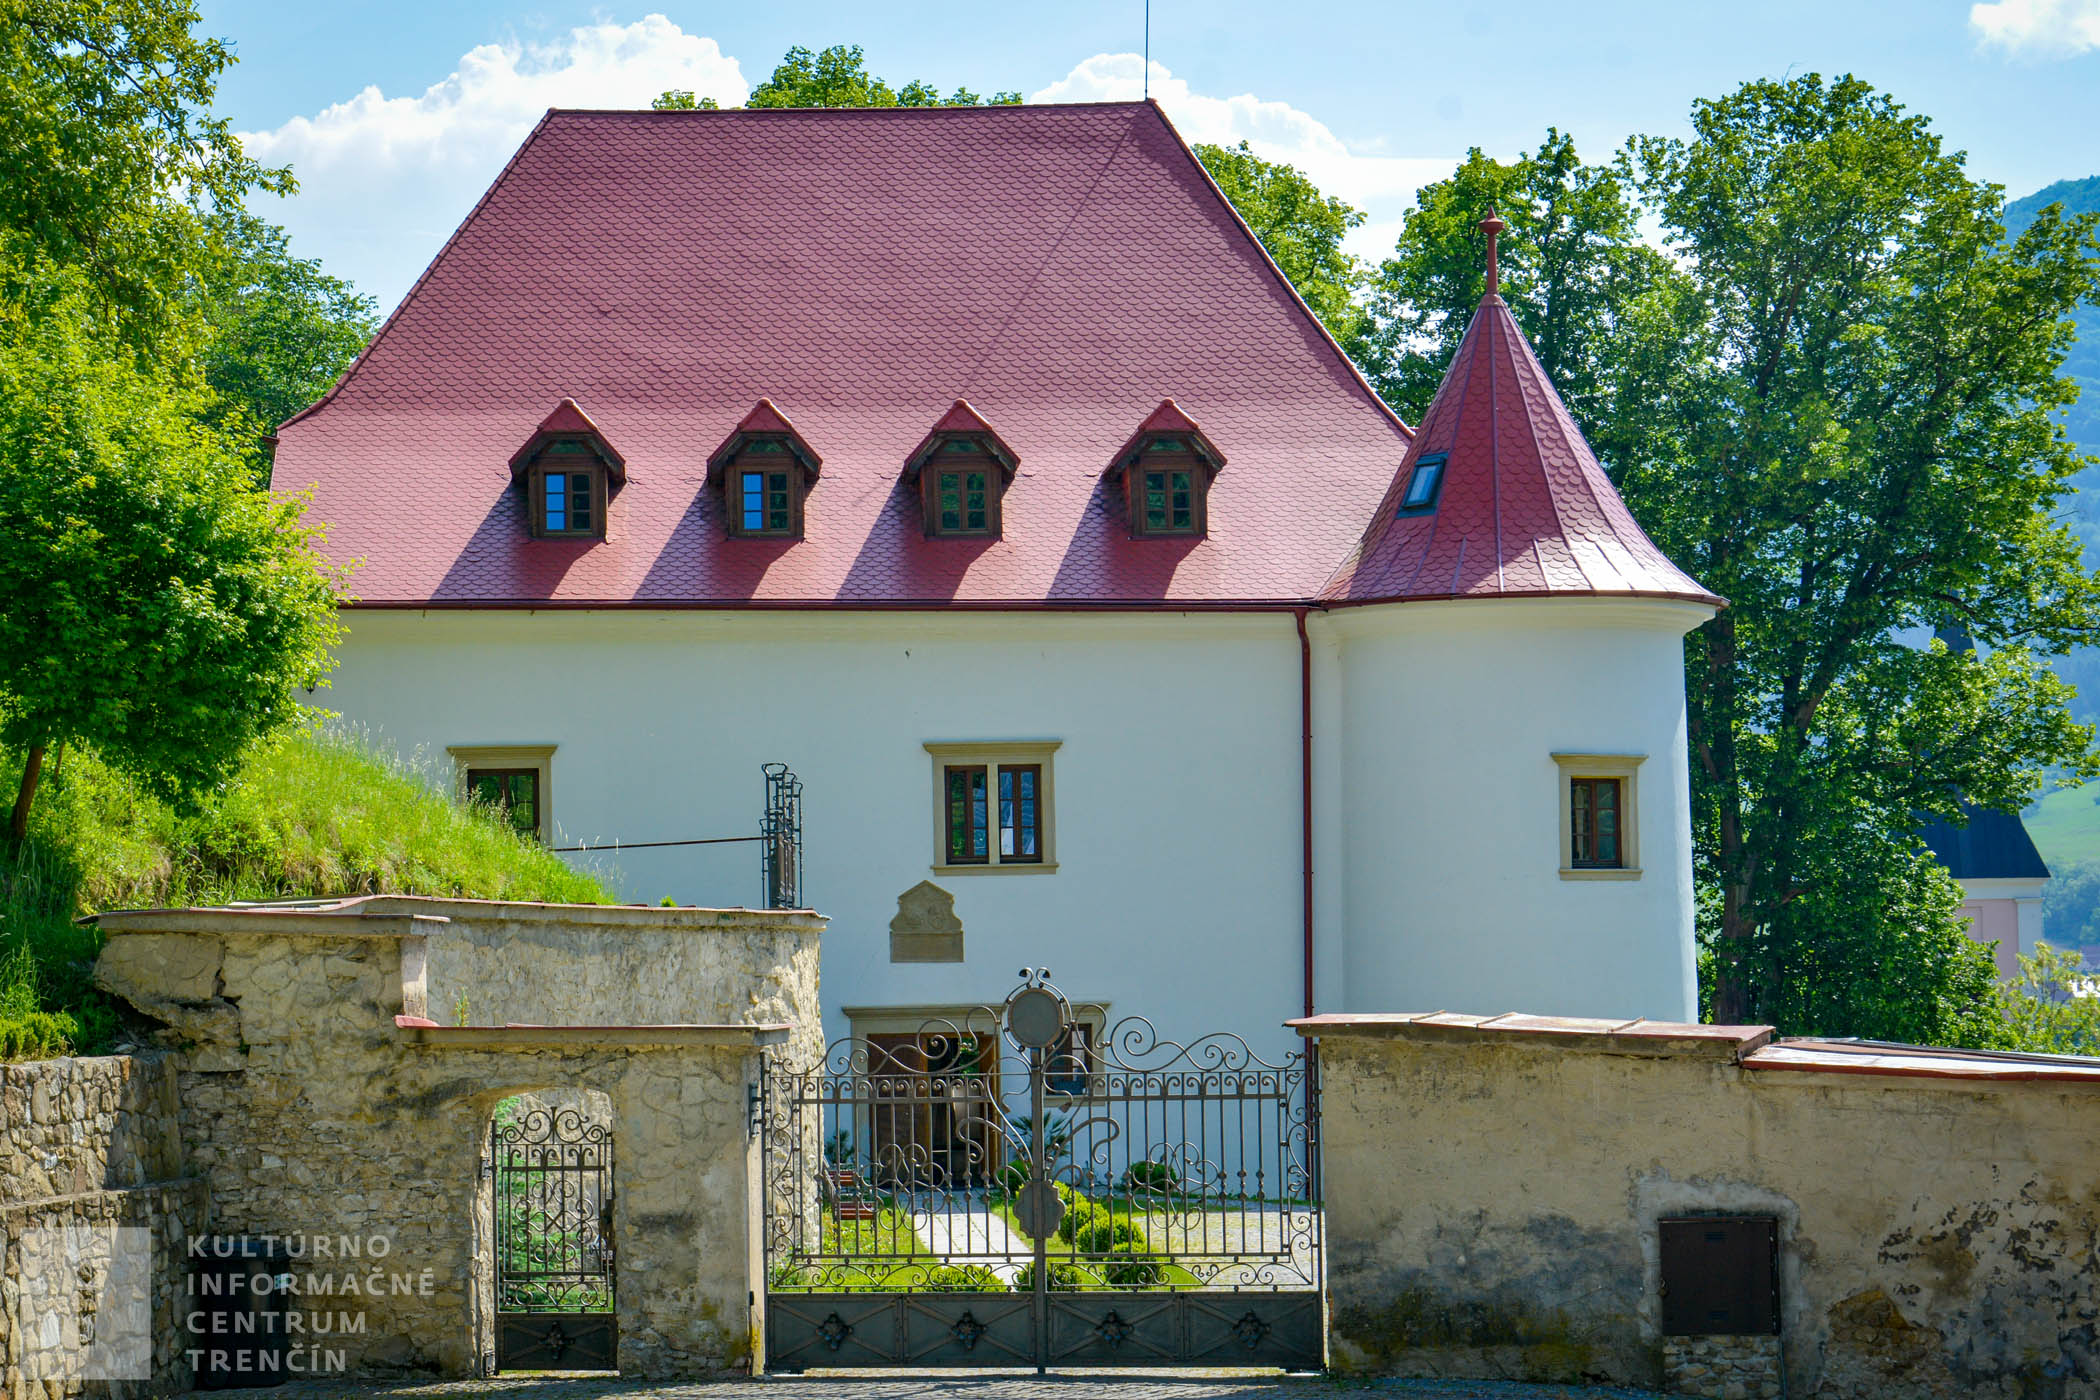 Renesančný kaštieľ "Burg" dali postaviť v roku 1631 Balašovci, ktorí uprednostnili bývanie v pohodlnom a luxusnom kaštieli pred stredovekým hradom.